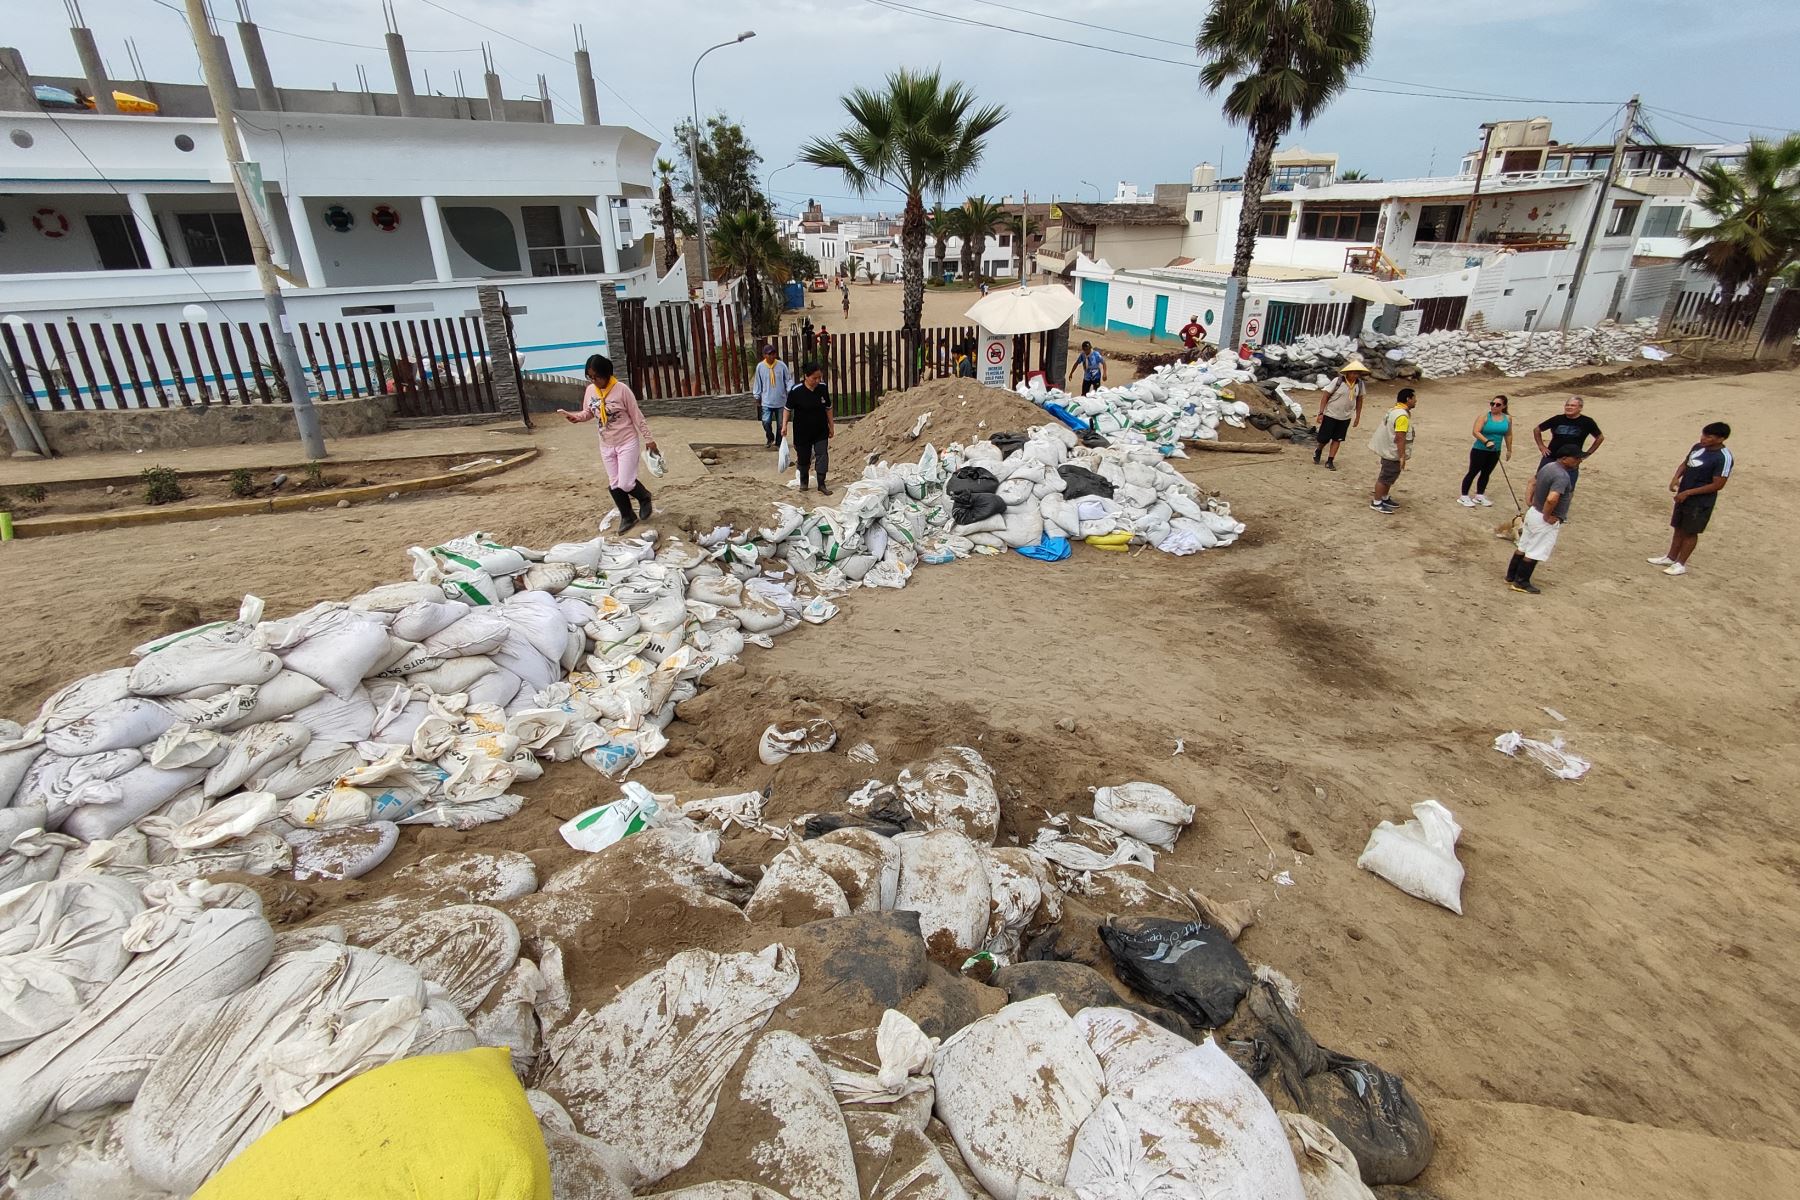 Vecinos de Punta Hermosa realizan trabajos de limpieza y reforzamiento de barreras en sus hogares, luego de los recientes huaycos ocurridos en el distrito, y cómo medida de prevención ante futuros desastres naturales. Foto: ANDINA/Daniel Bracamonte